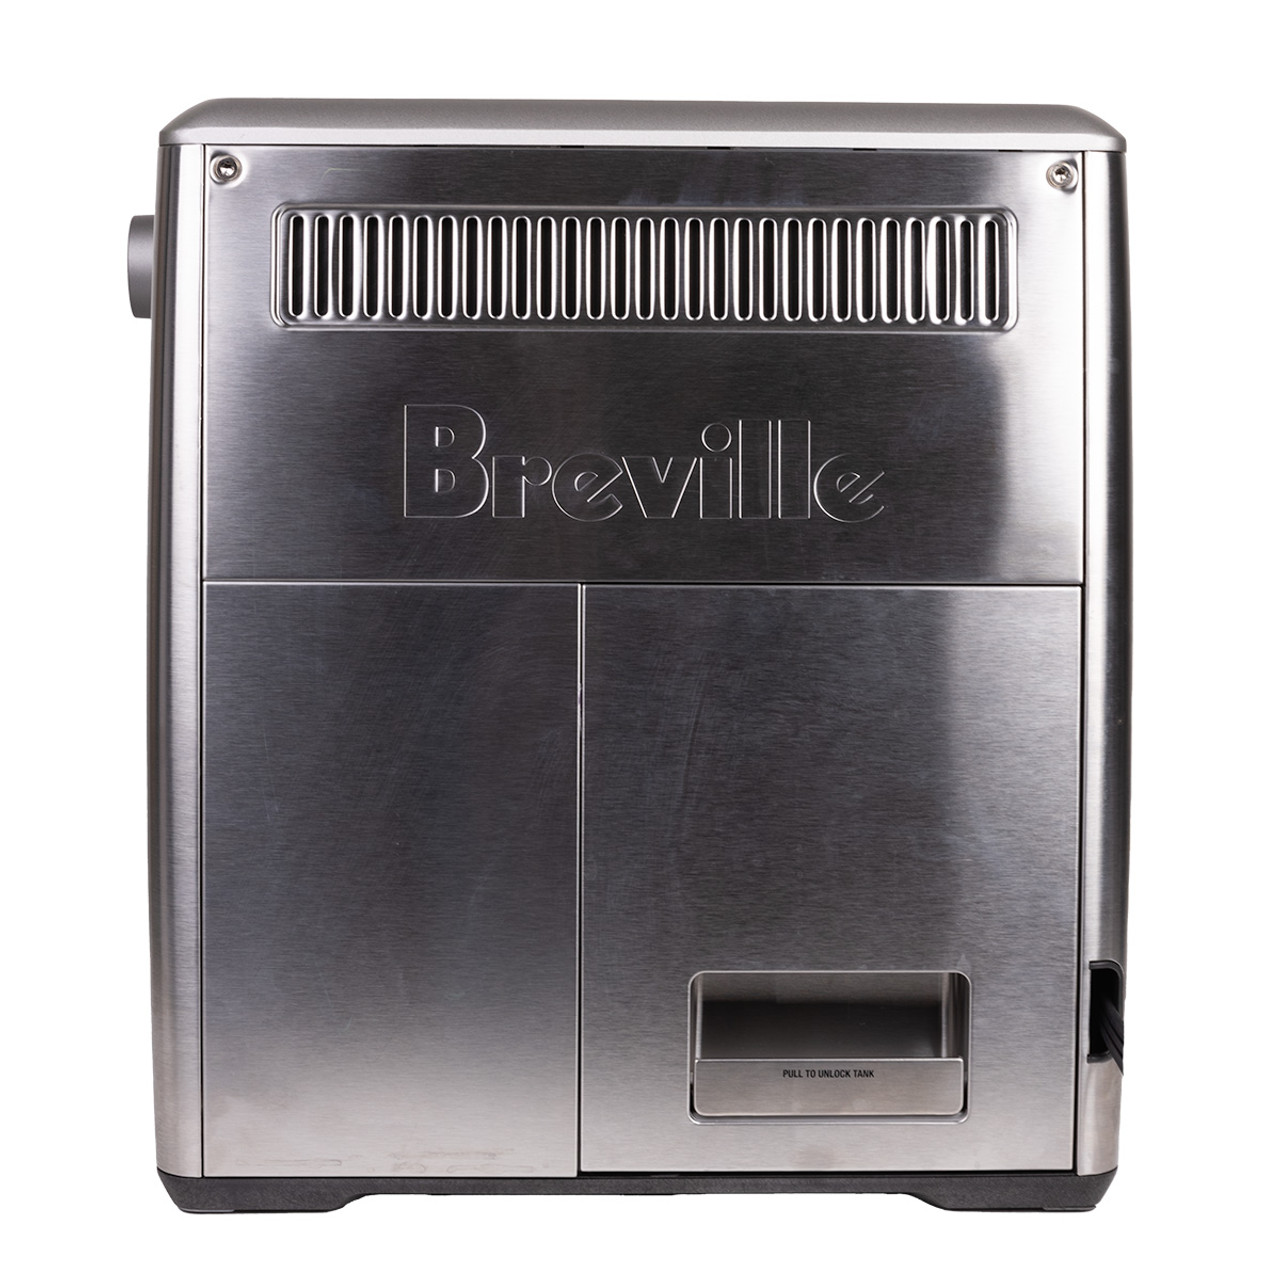 Dual Boiler Espresso Machine, Breville